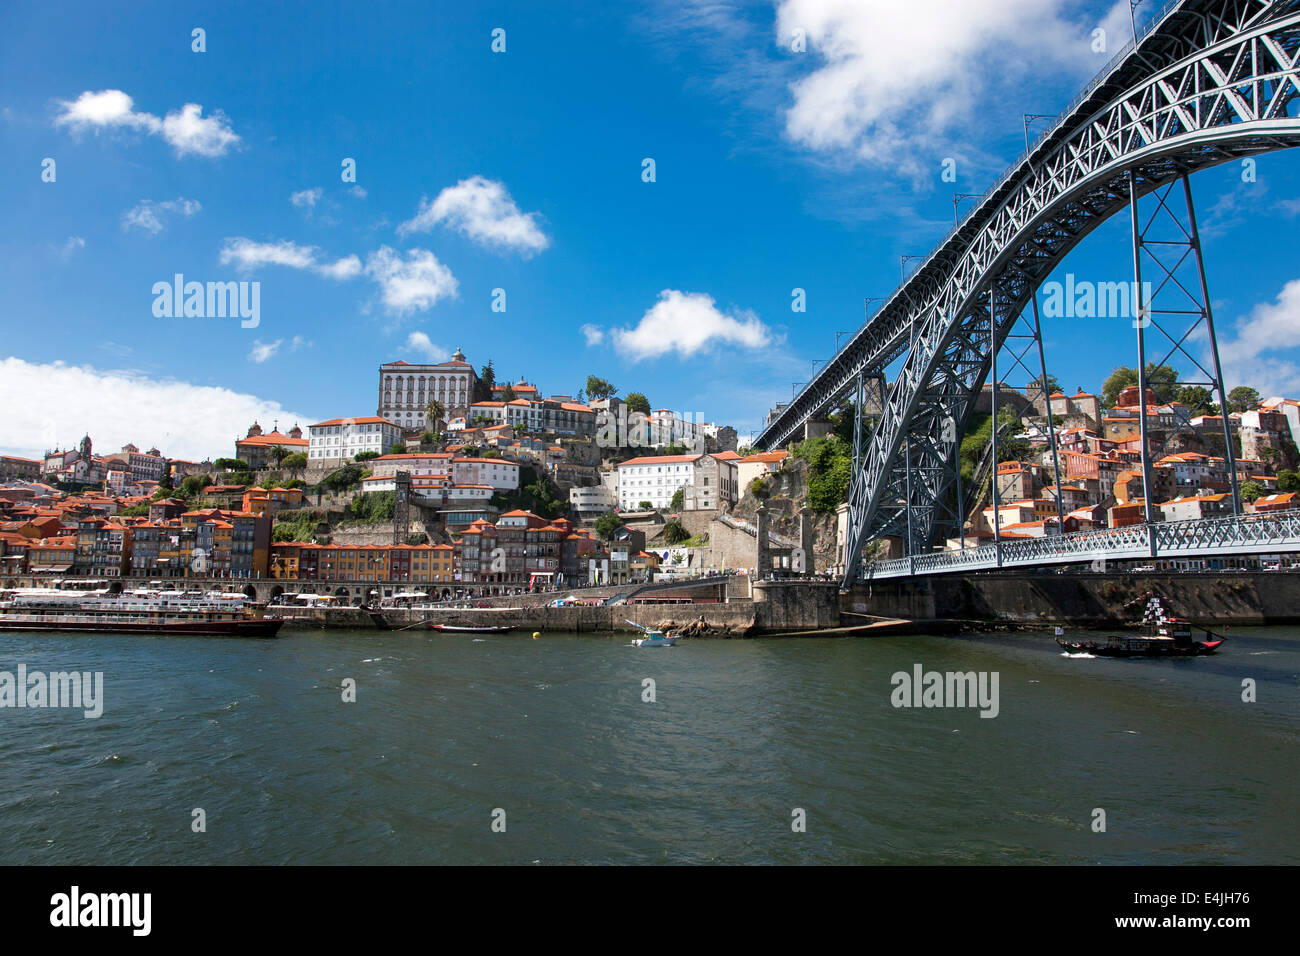 Portugal, Porto - Blick auf den Douro, das historische Zentrum der Stadt Ribeira und die Brücke Dom Luís I. Stockfoto